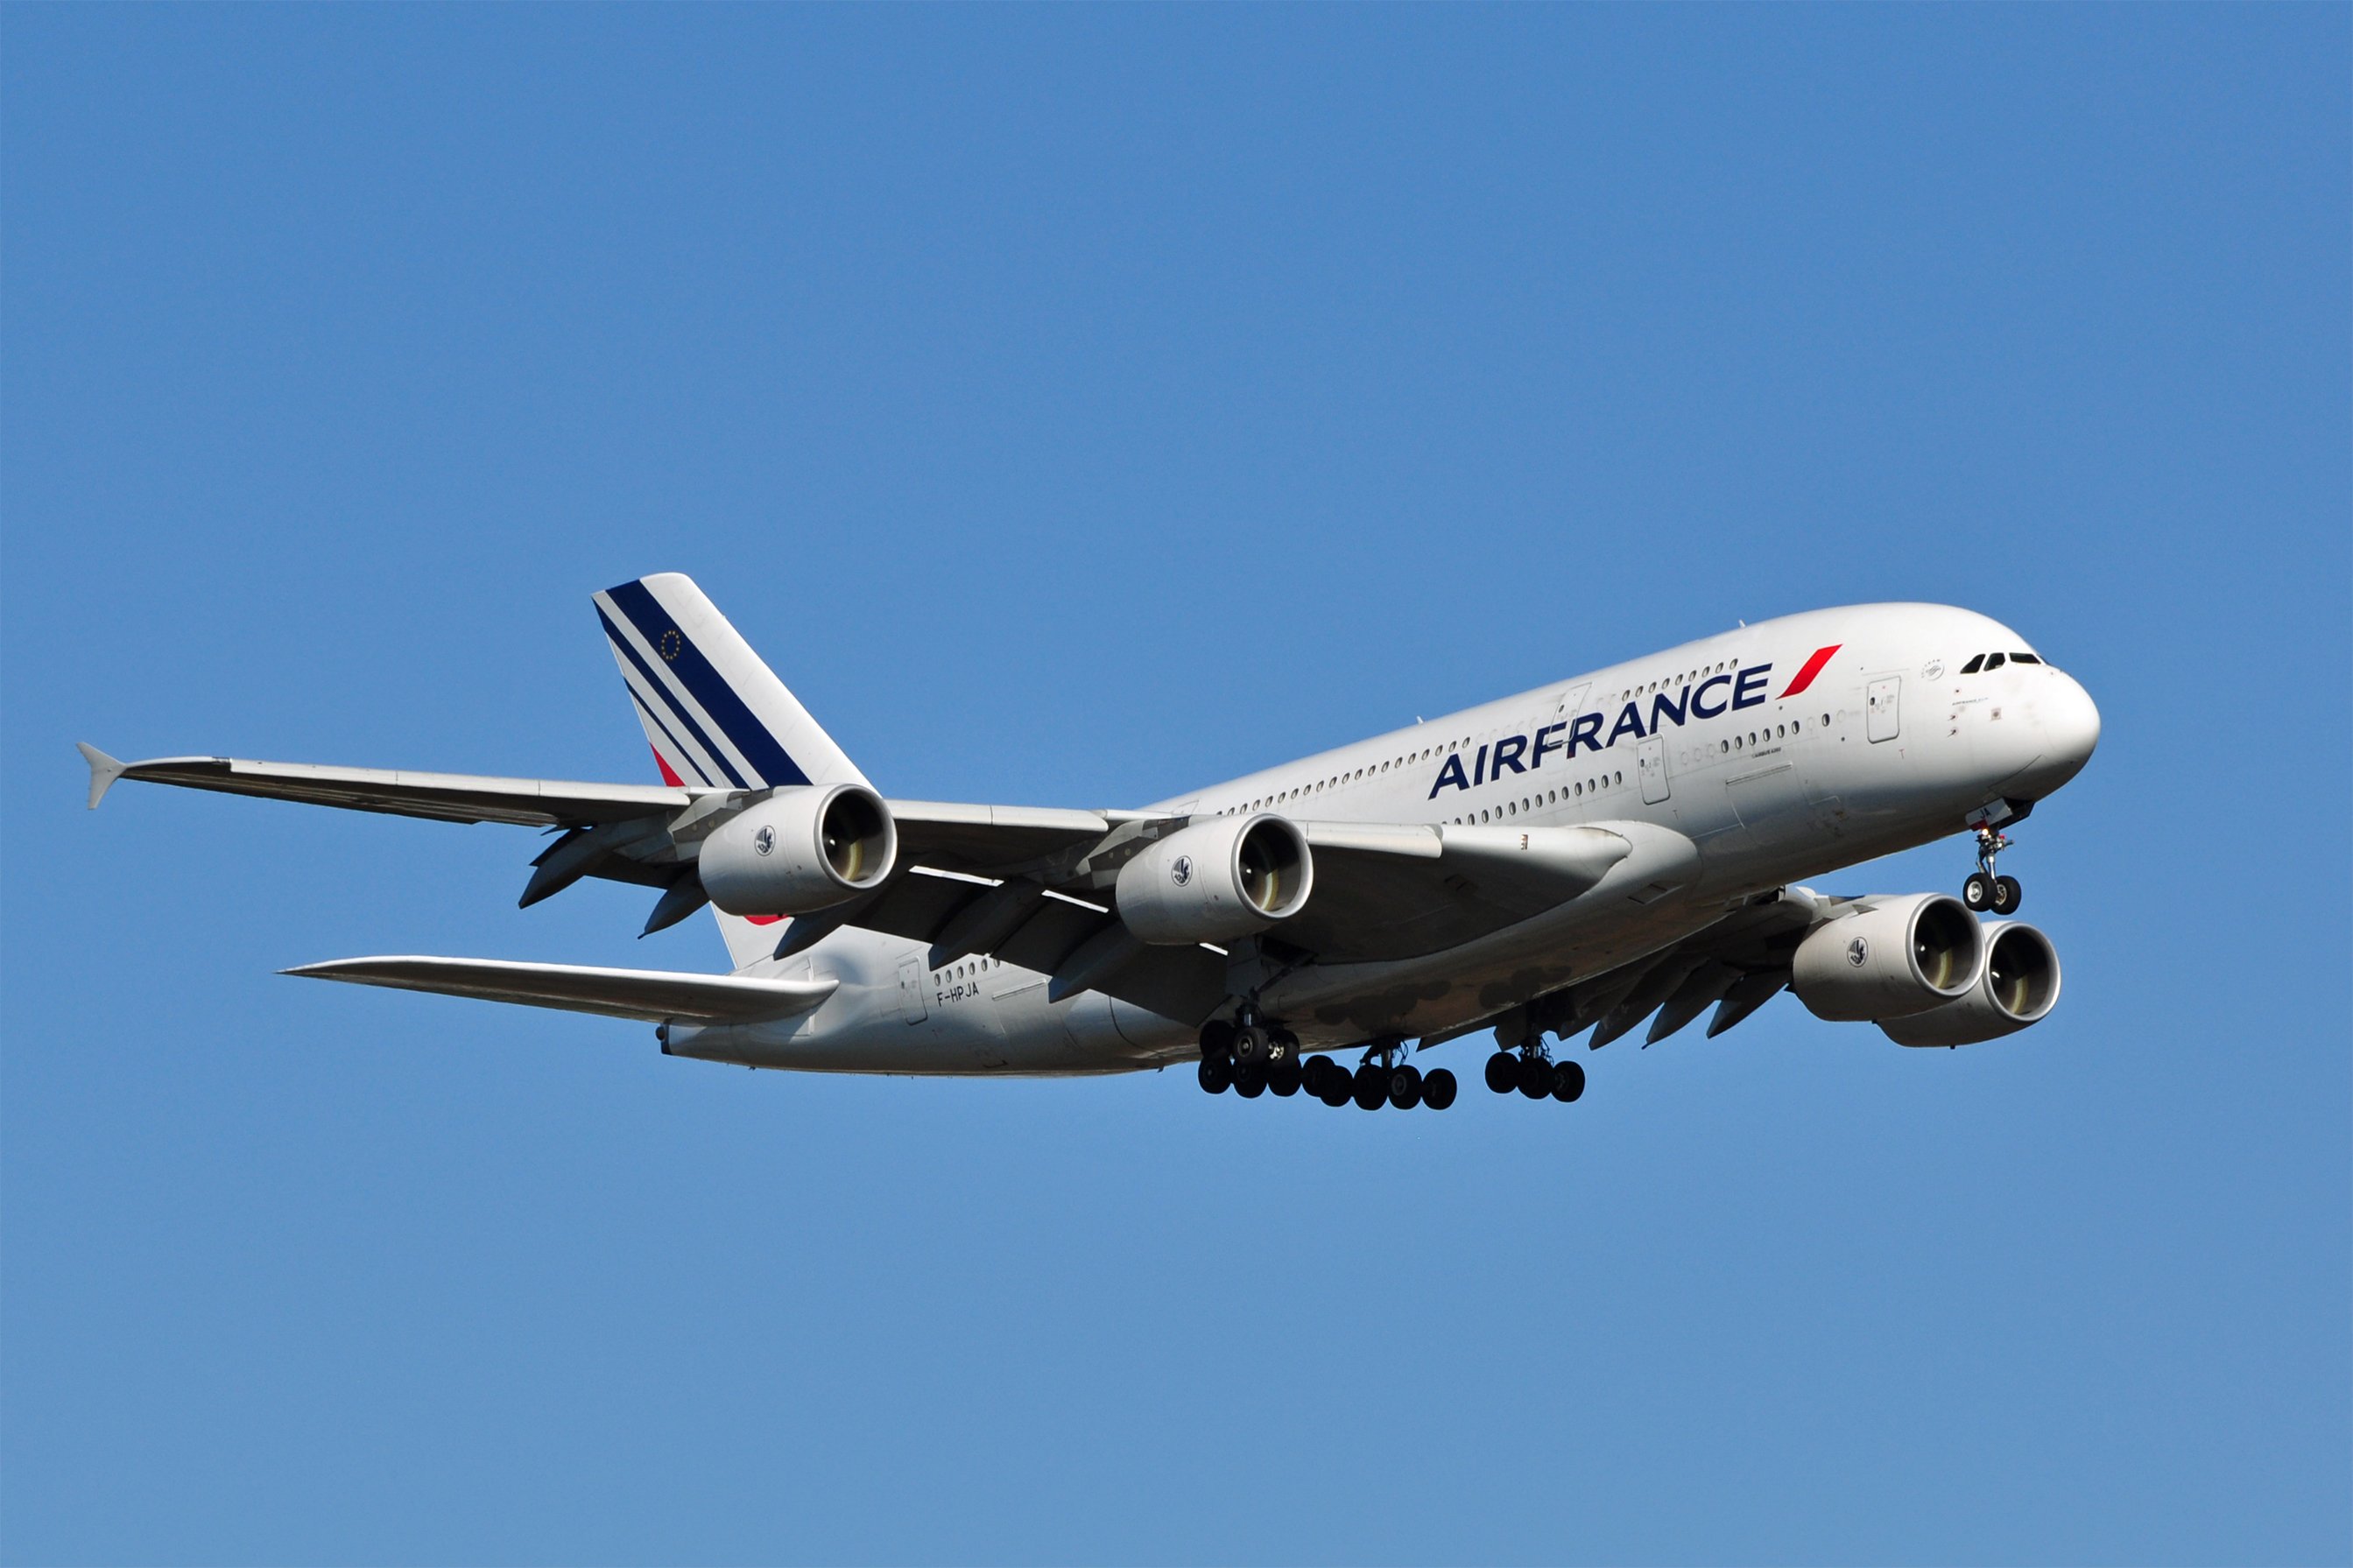 Τα αεροσκάφη της Air France δεν θα πετούν πάνω από το Μάλι